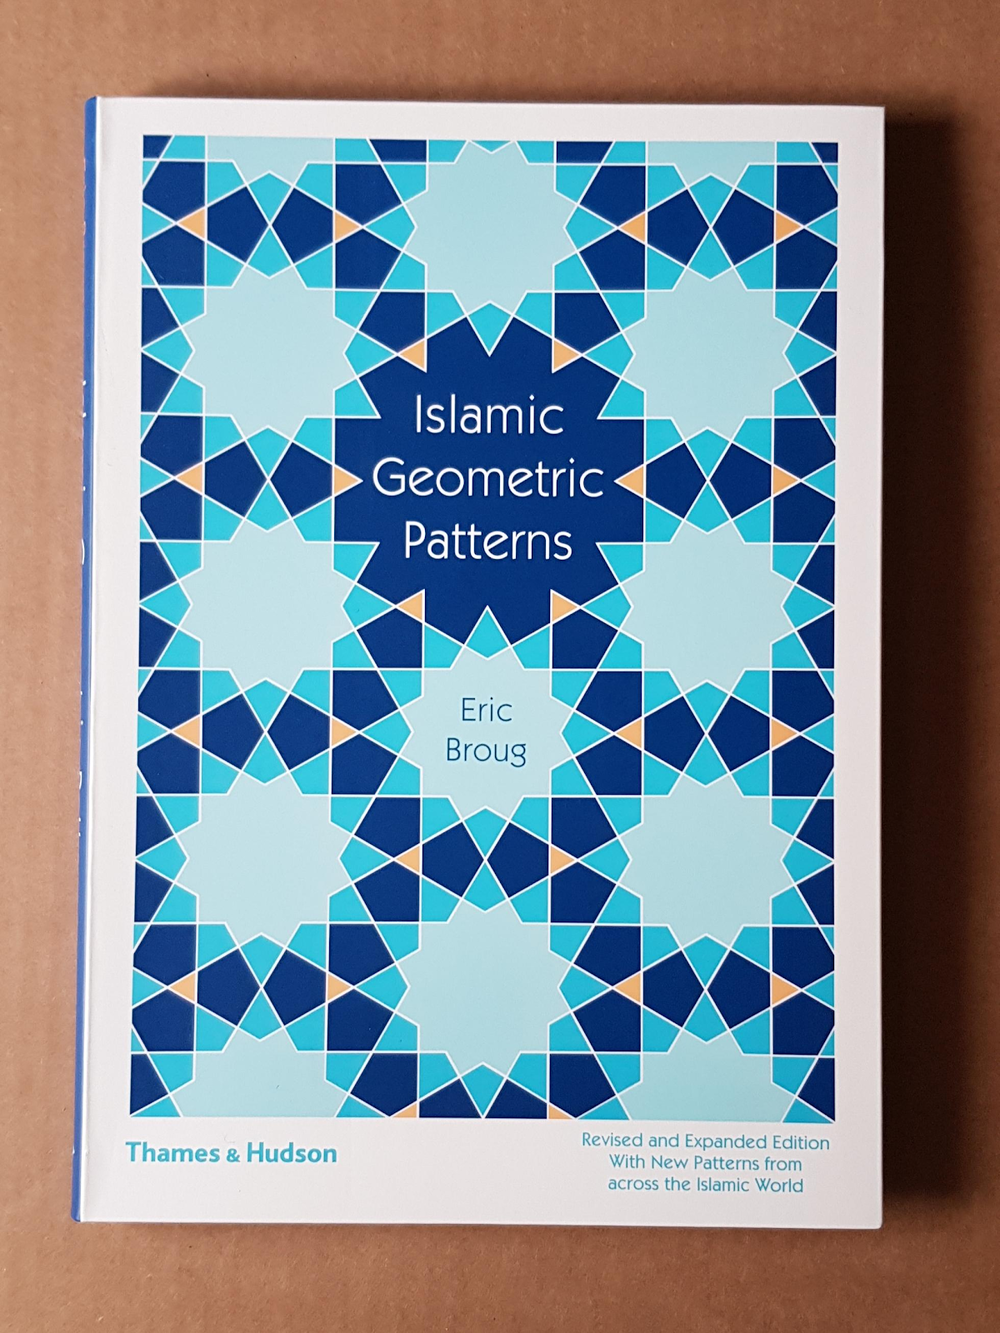 Eric Broug ist auf islamisches Design spezialisiert, wie auf dem Cover seines Buches zu sehen ist.